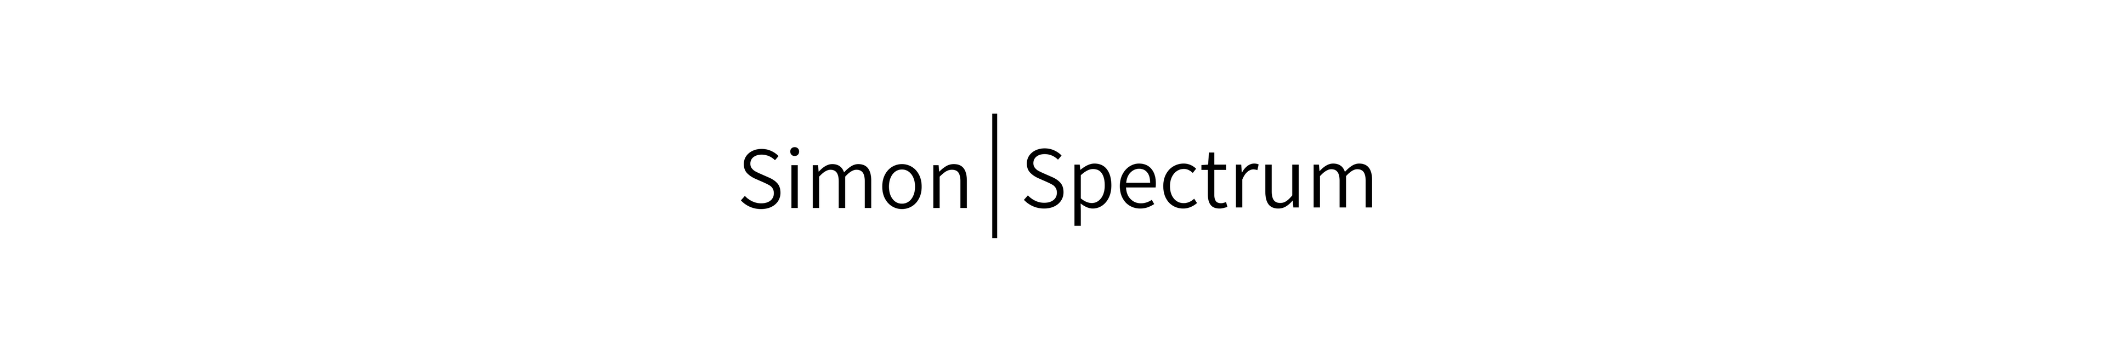 Simon Spectrum